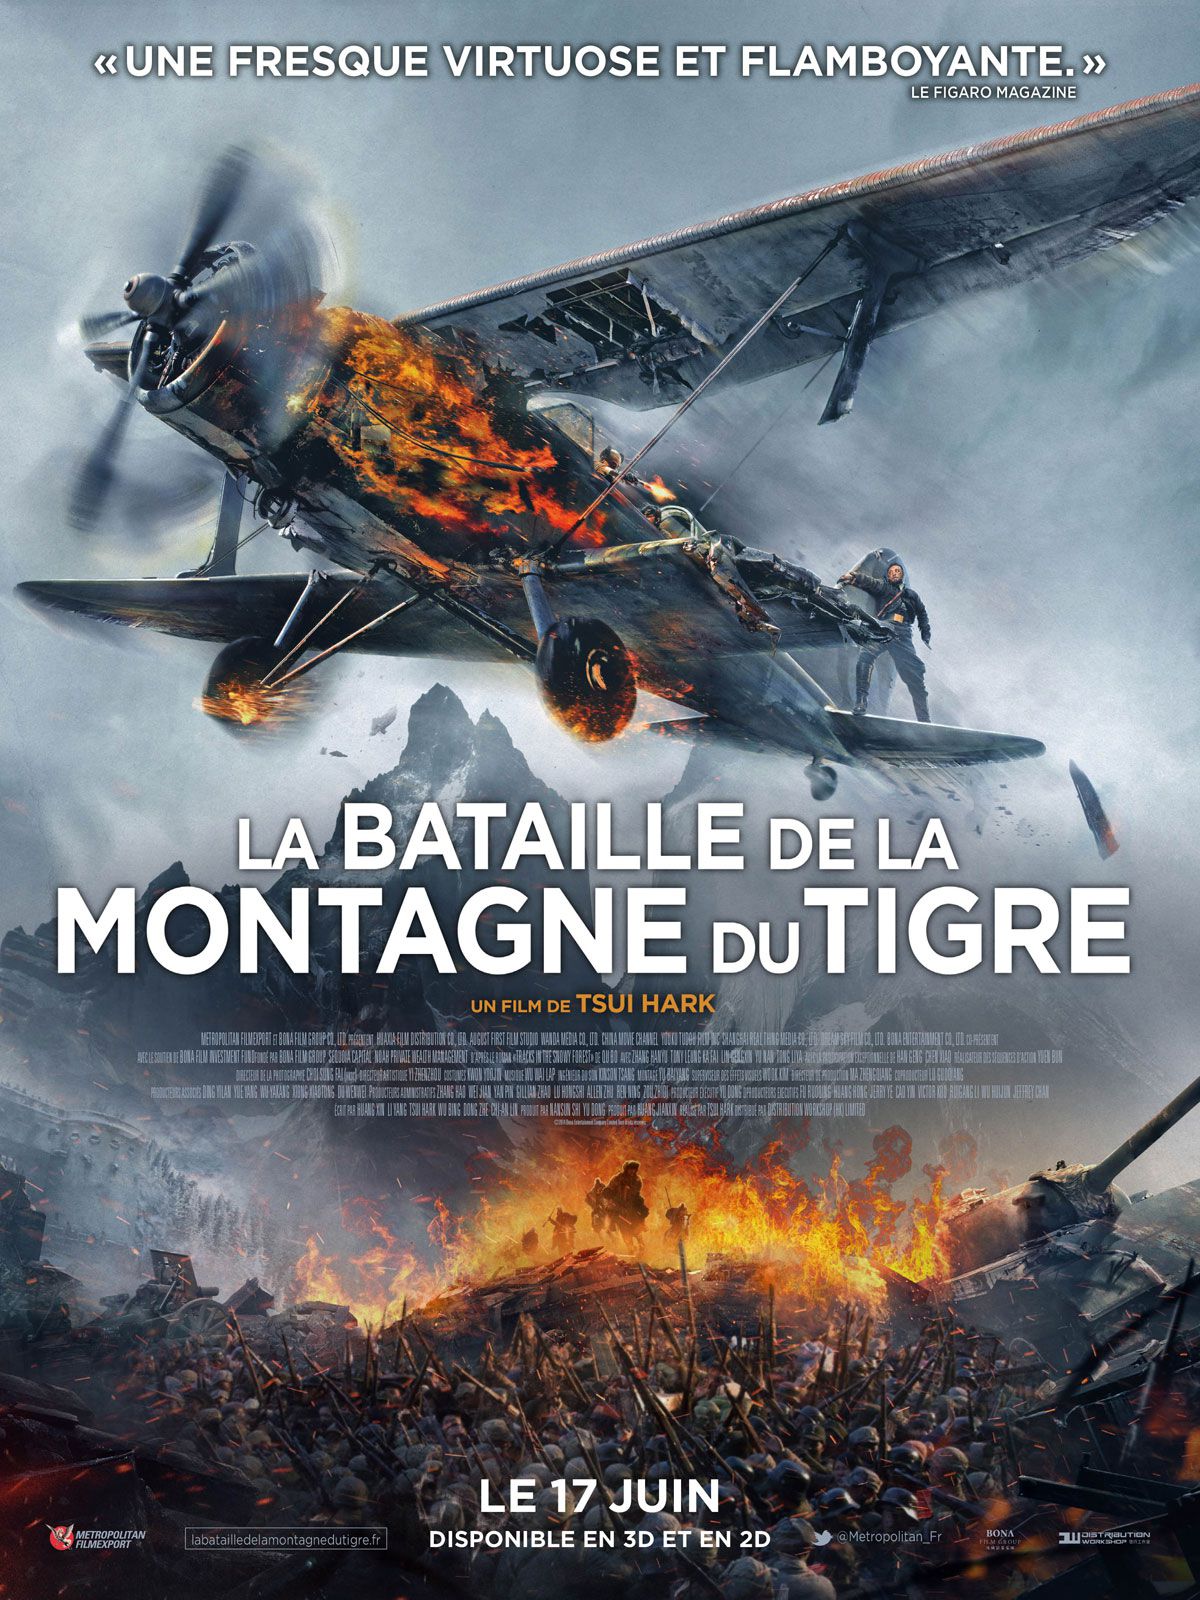 La Bataille de la Montagne du Tigre - Film (2014) streaming VF gratuit complet